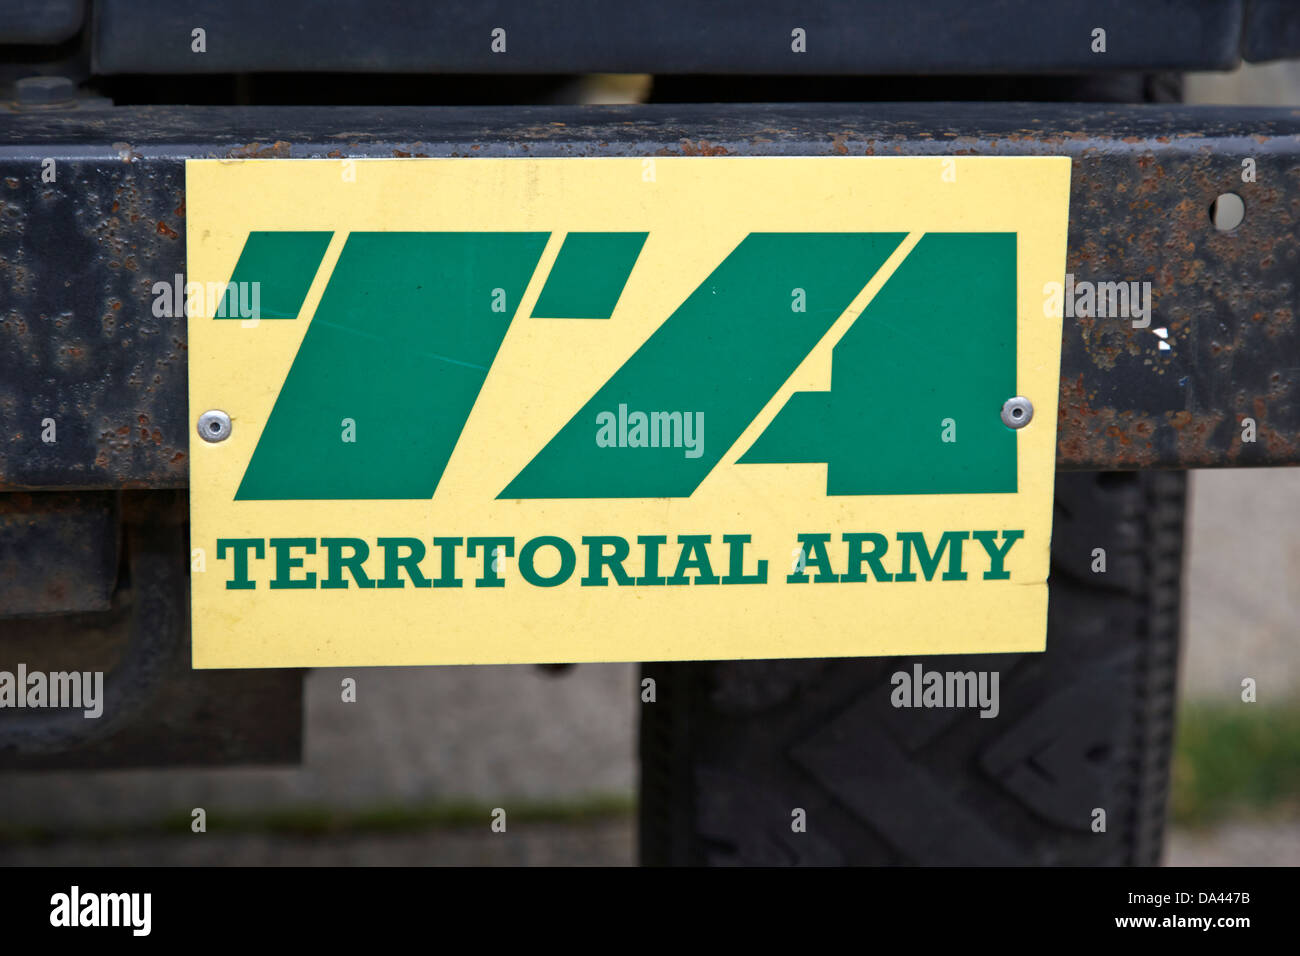 Logo de l'armée territoriale de l'armée britannique sur une landrover au Royaume-Uni Banque D'Images